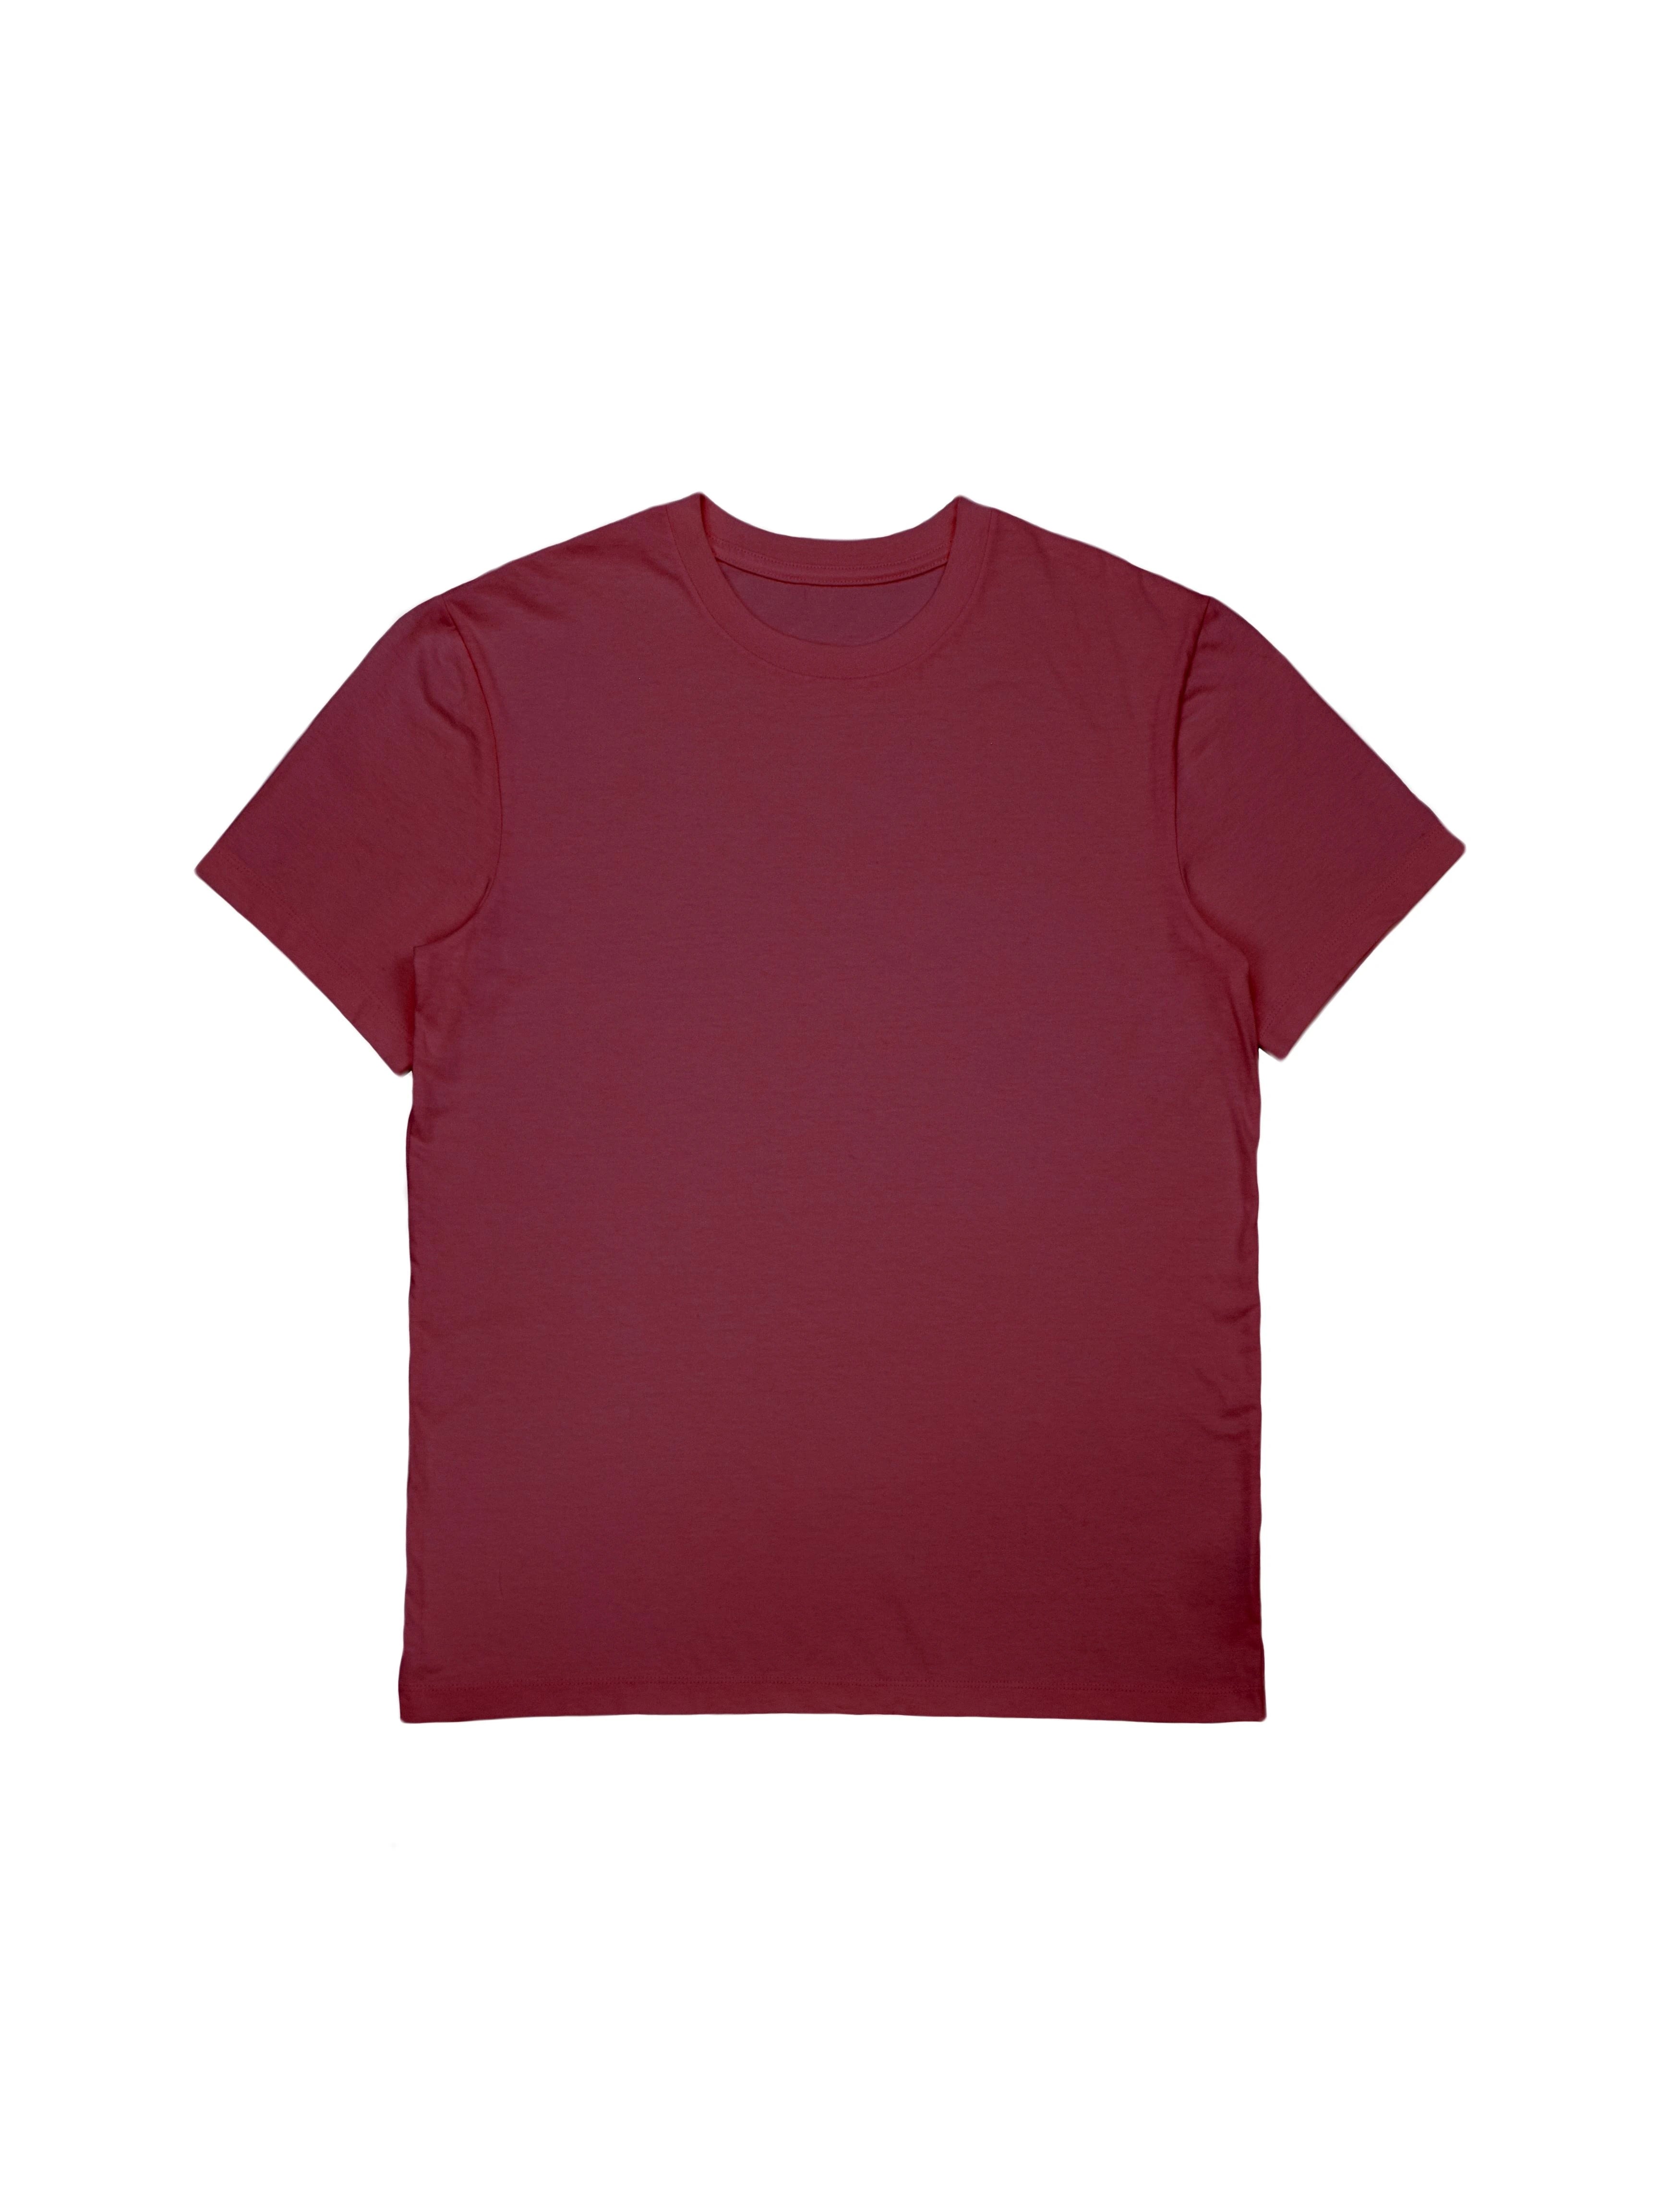 Buy 2 Pack Plain & Leaf T-Shirt Bras - Burgundy - 34D in Bahrain - bfab